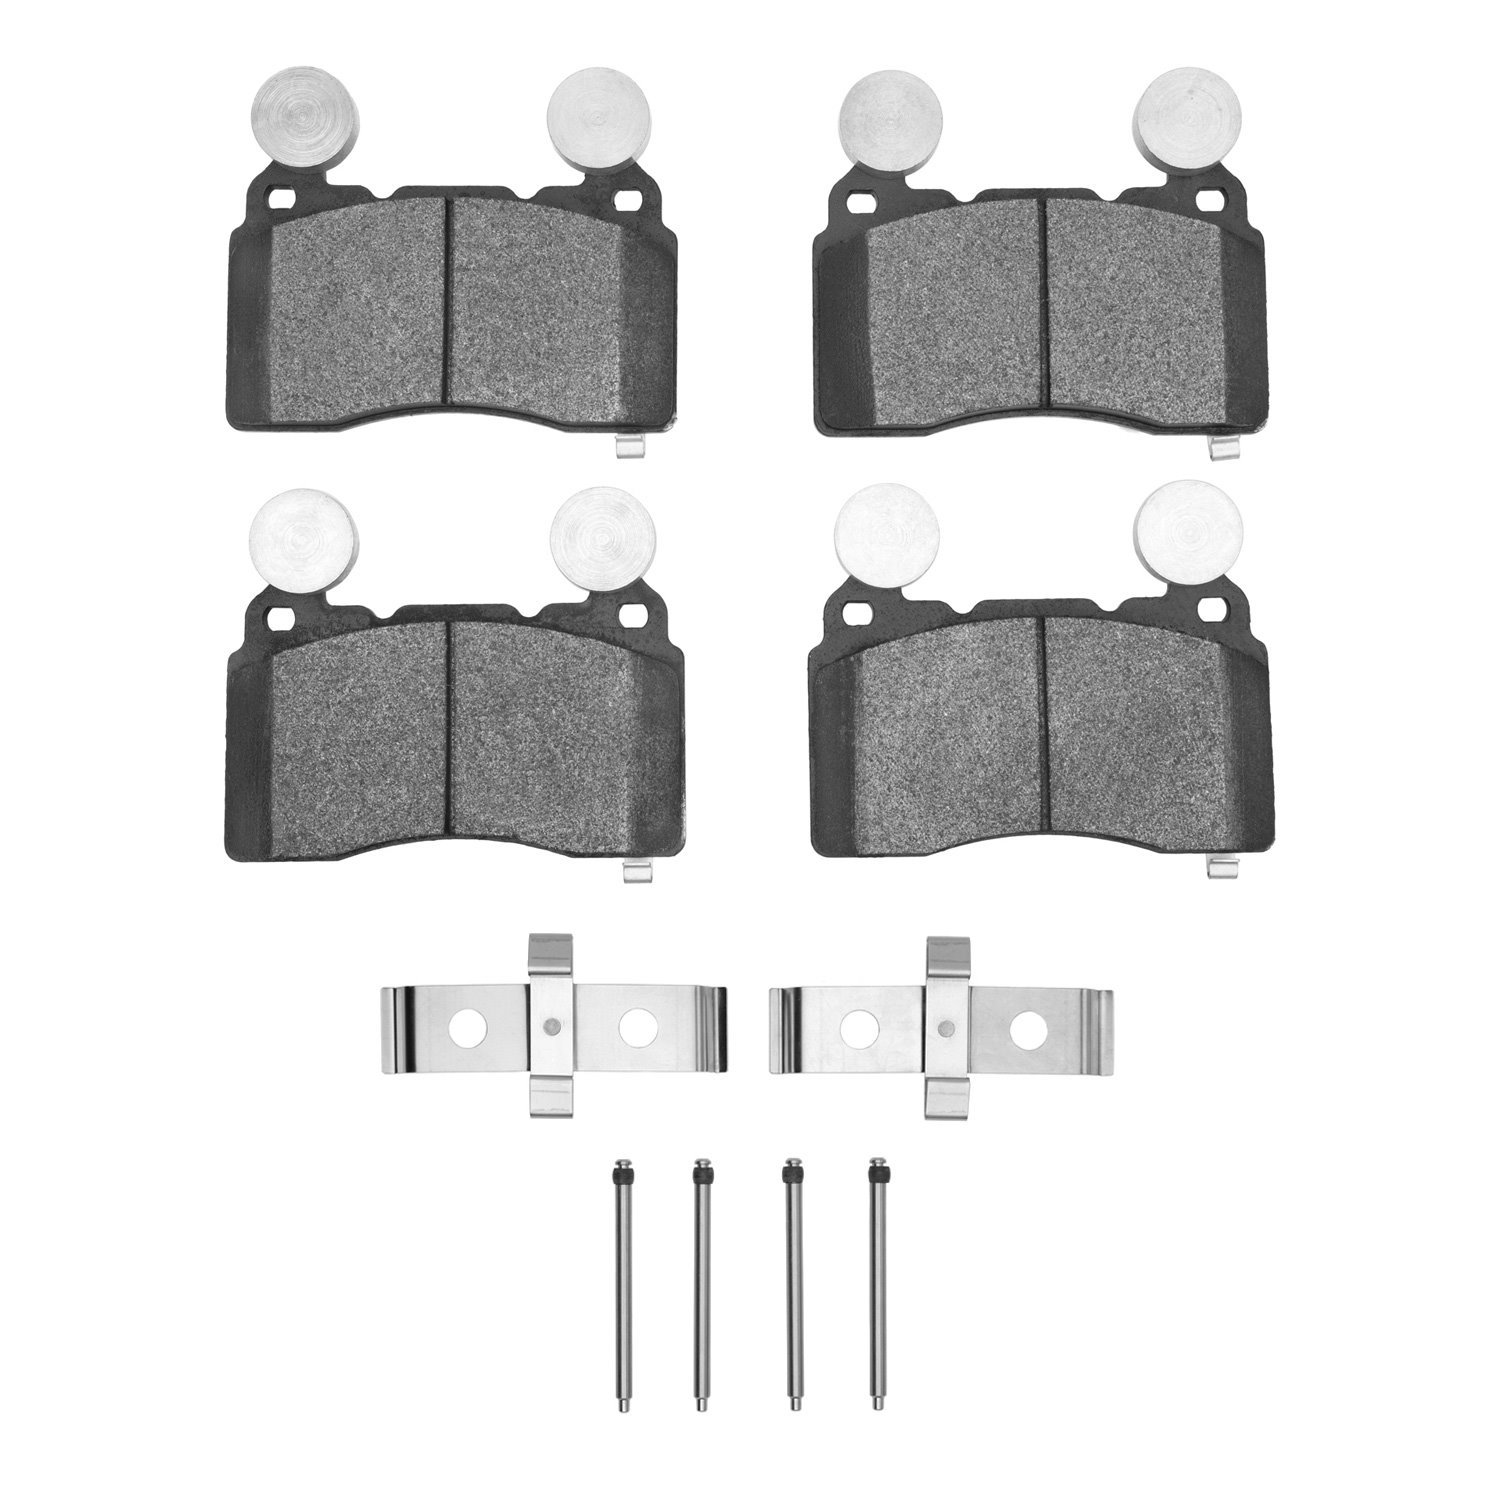 1310-1474-01 3000-Series Ceramic Brake Pads & Hardware Kit, 2010-2015 GM, Position: Front